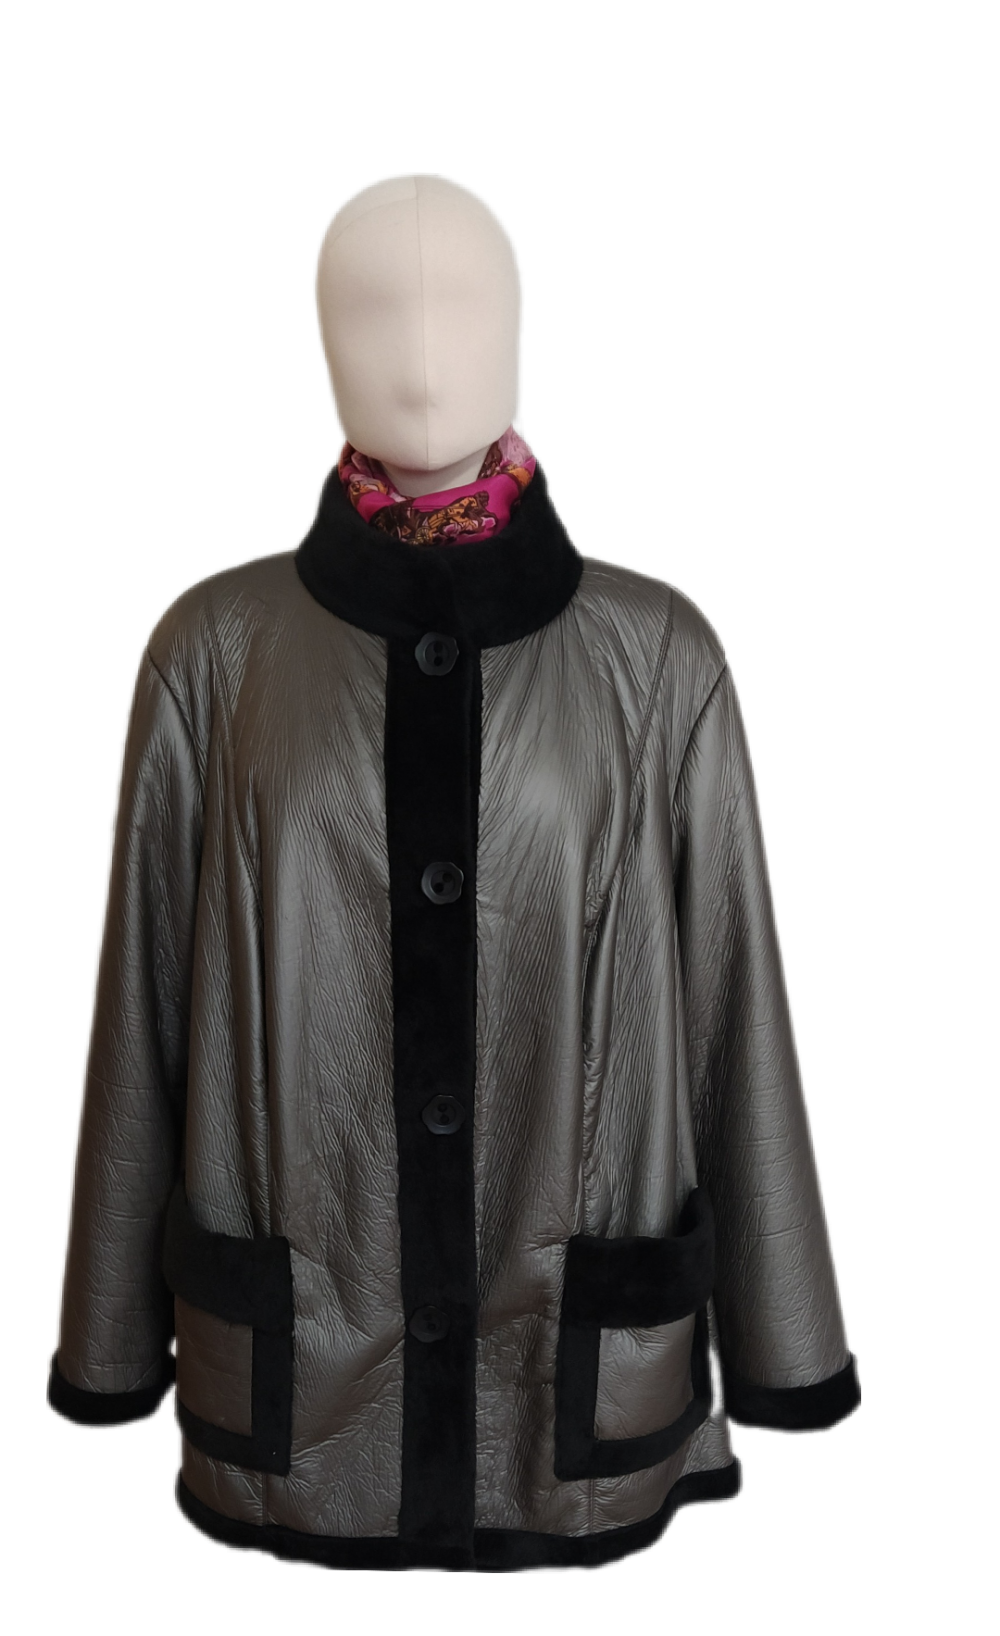 Пальто De Luxe, размер XXL, 66-68